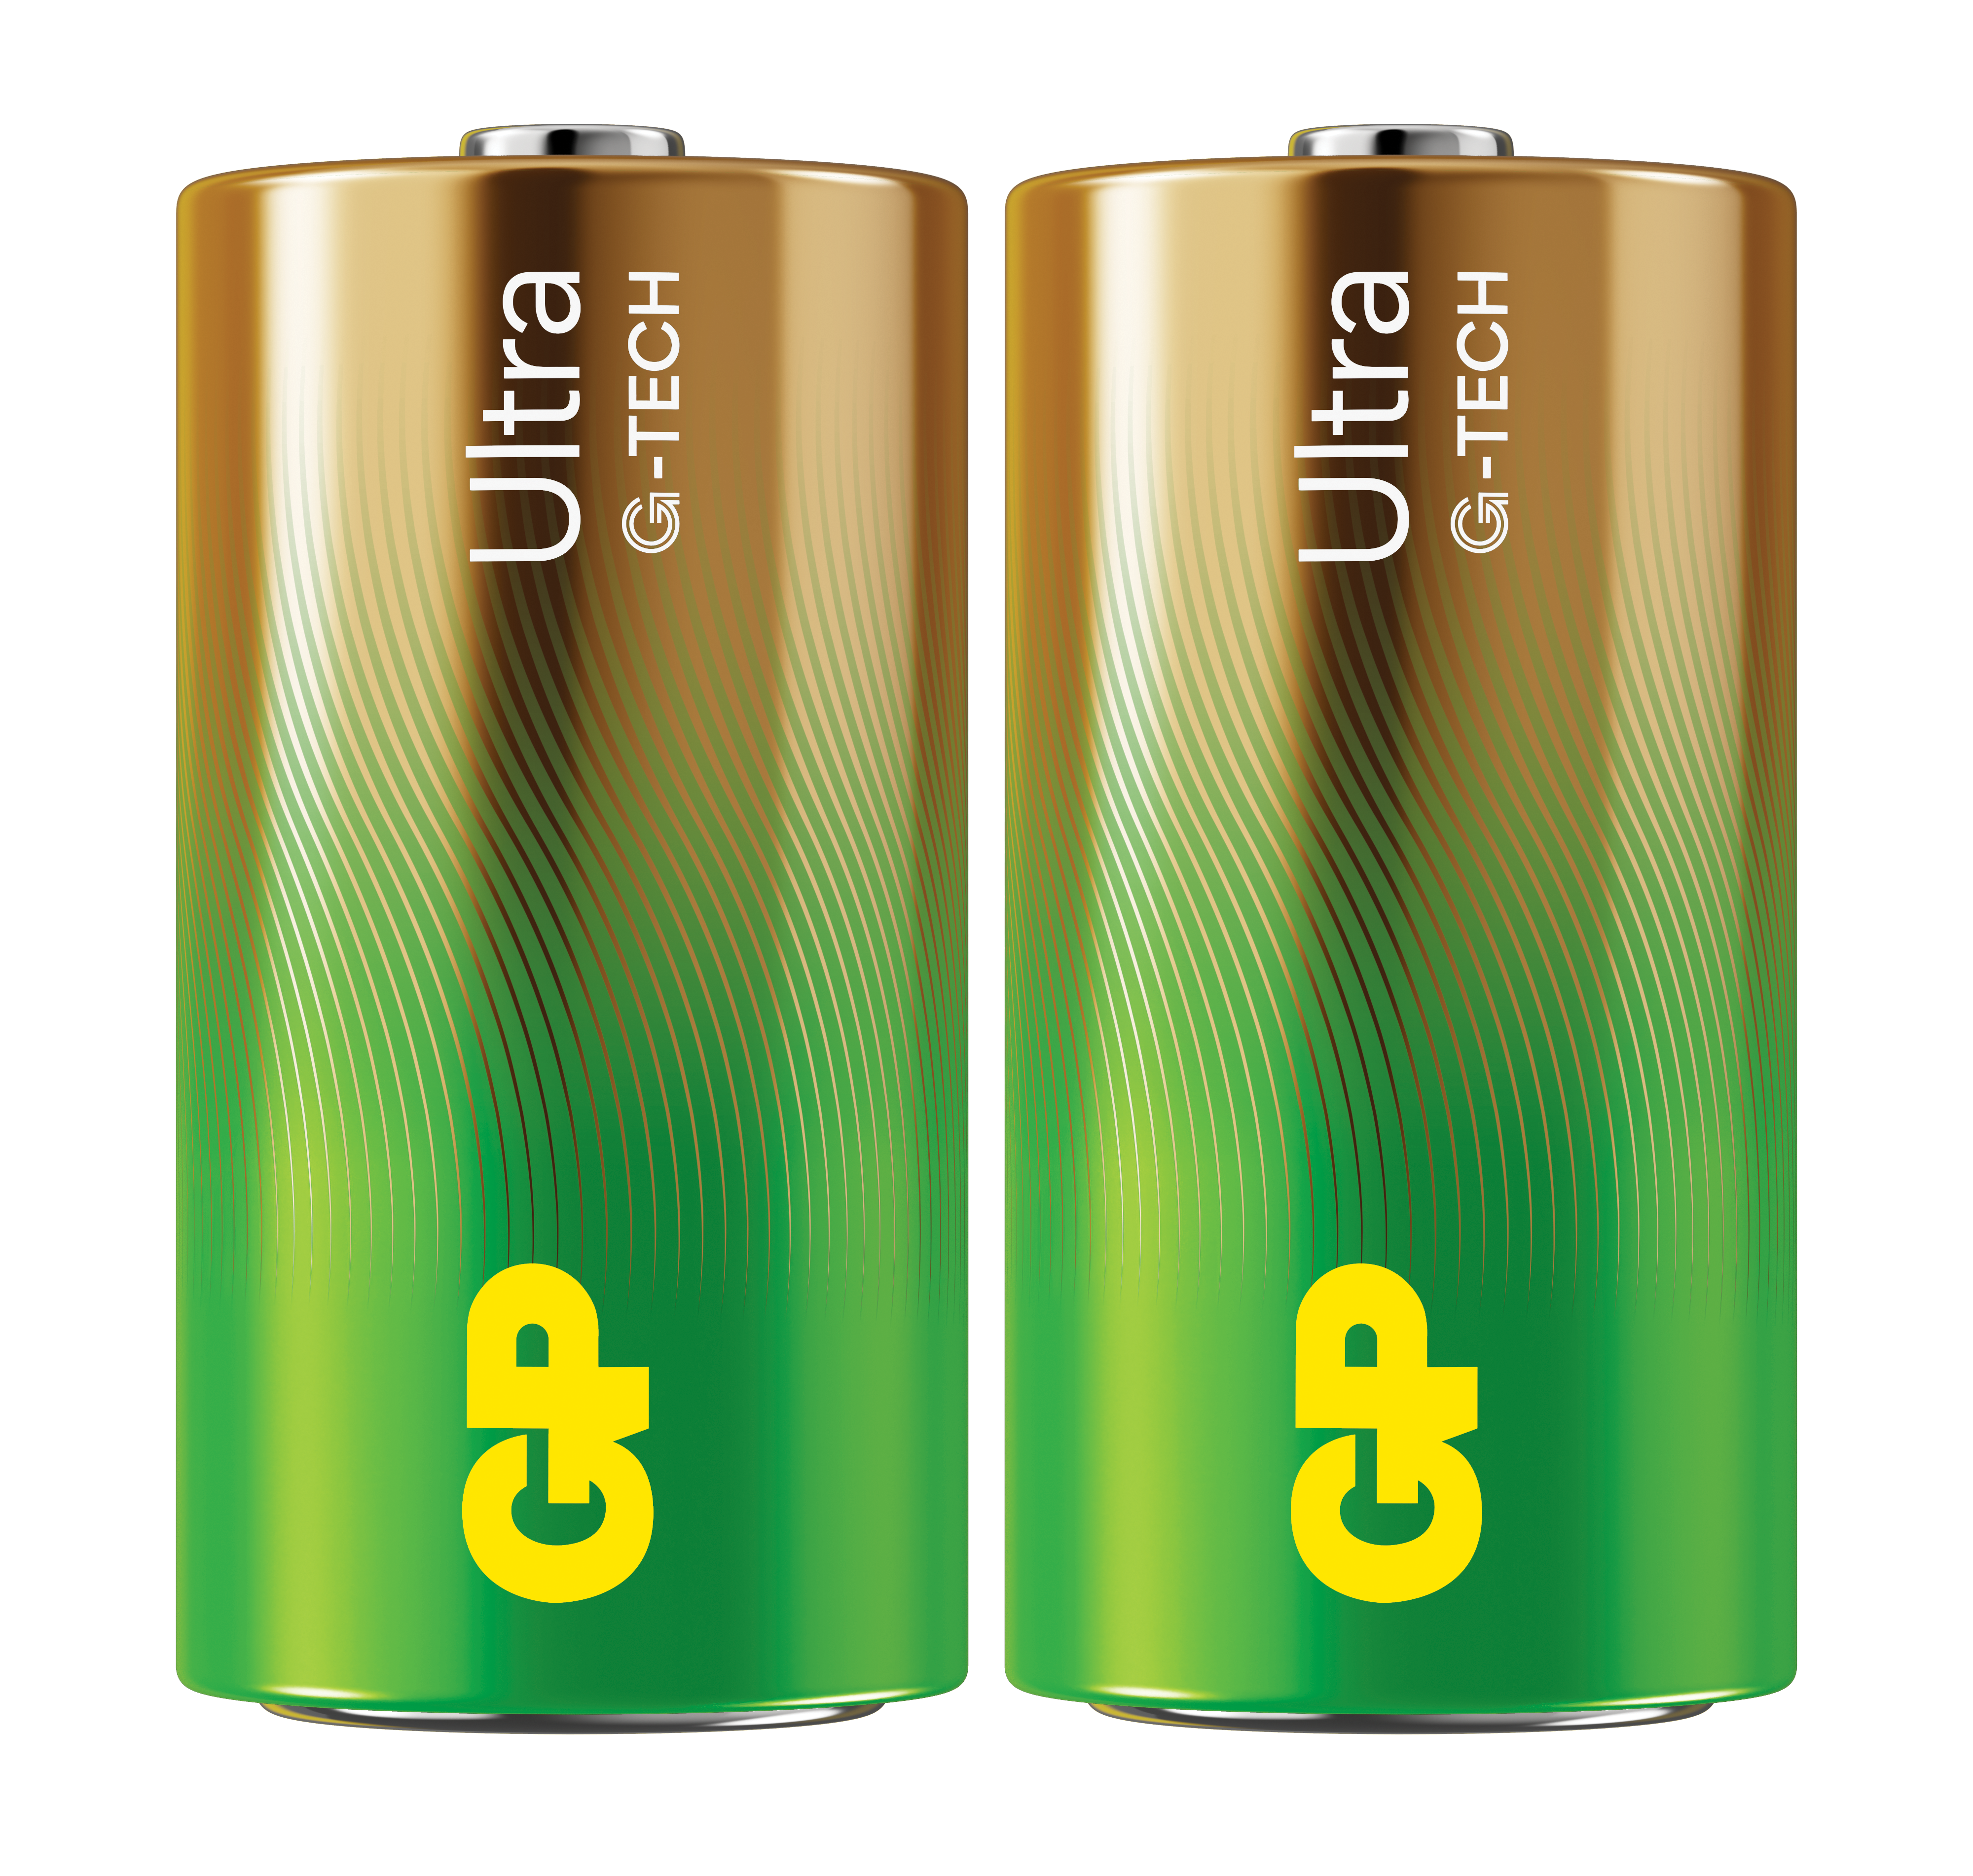 Ultra Alkaline C-batteri 14AU/LR14 (2-pack)